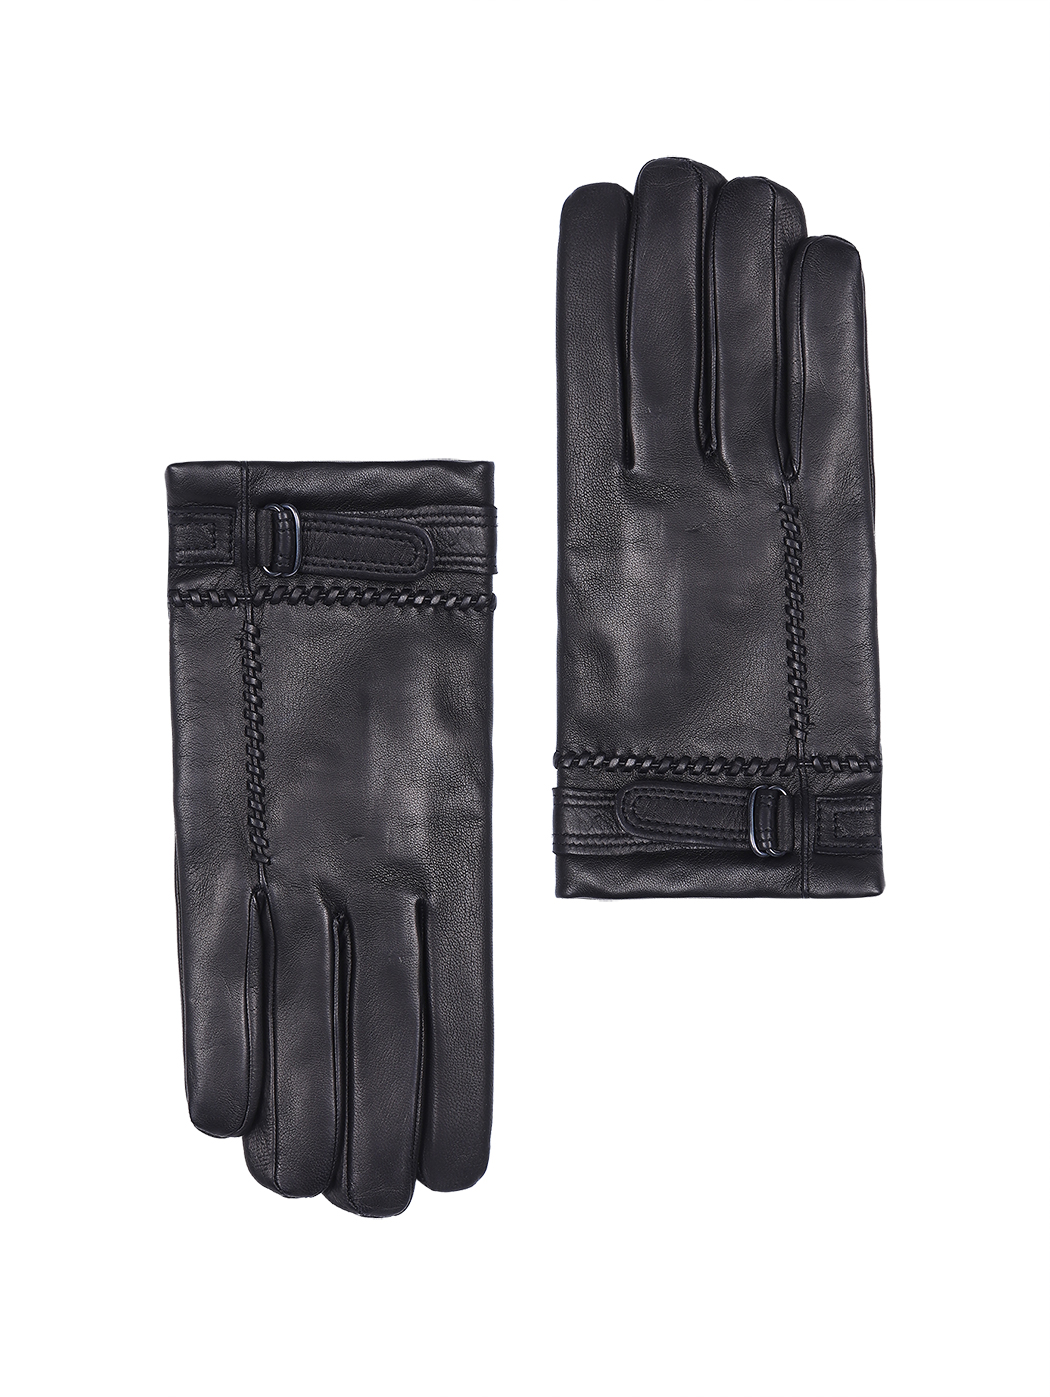 Кожаные перчатки с декоративным ремешком черного цвета